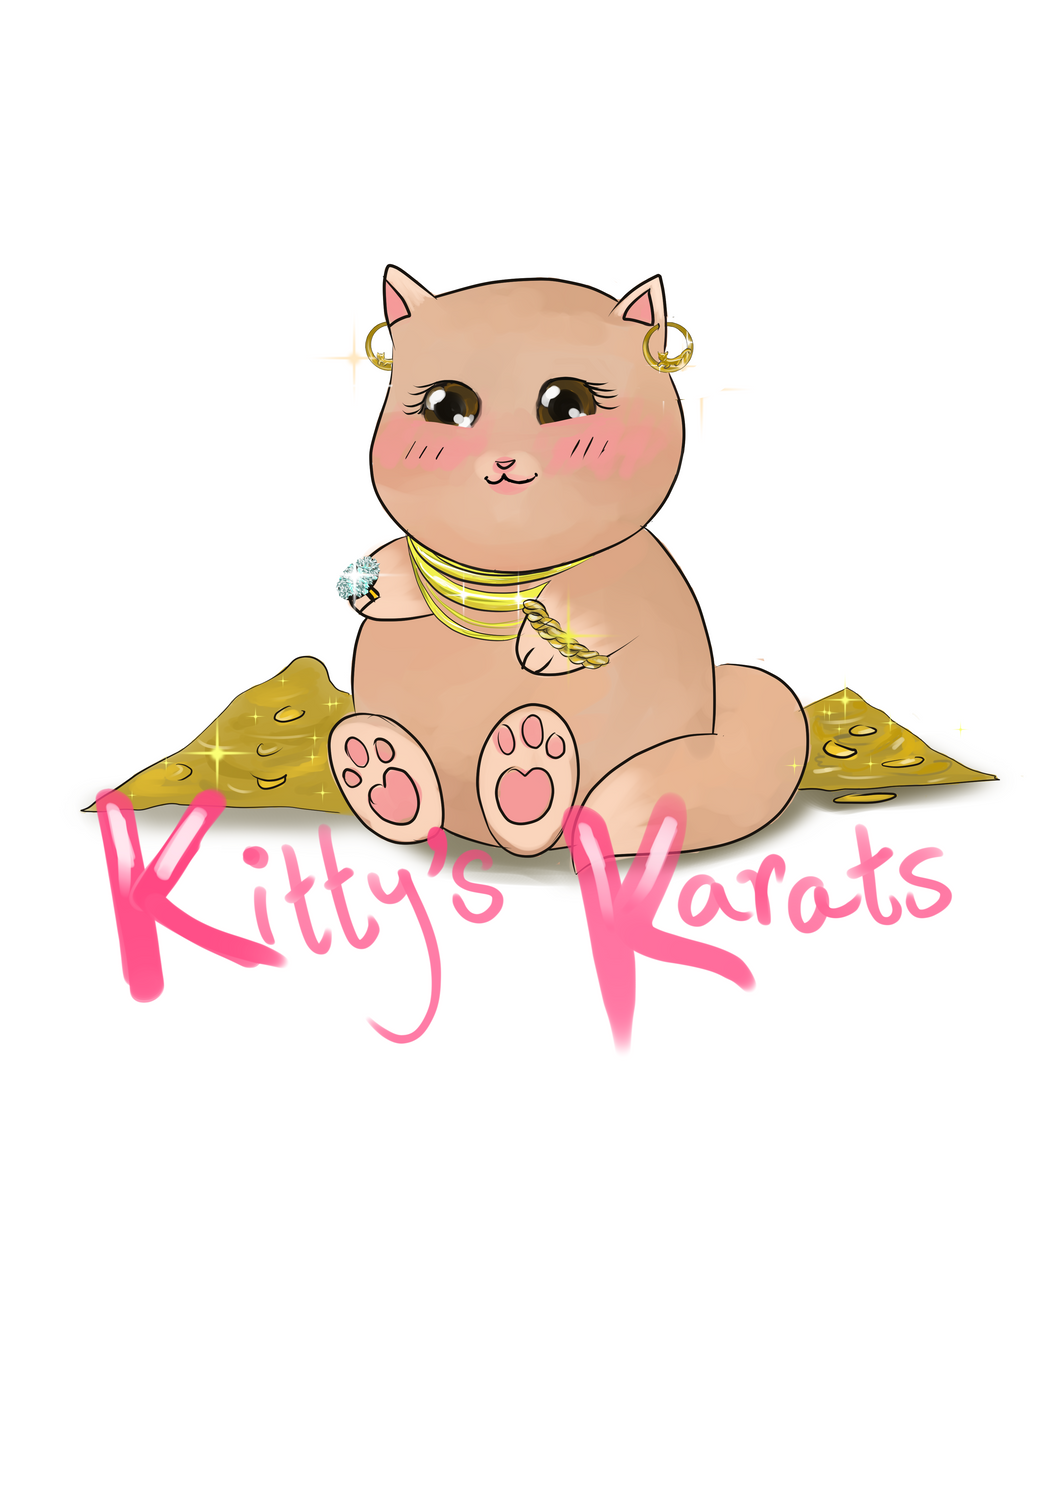 Kitty's Karats Gift Card